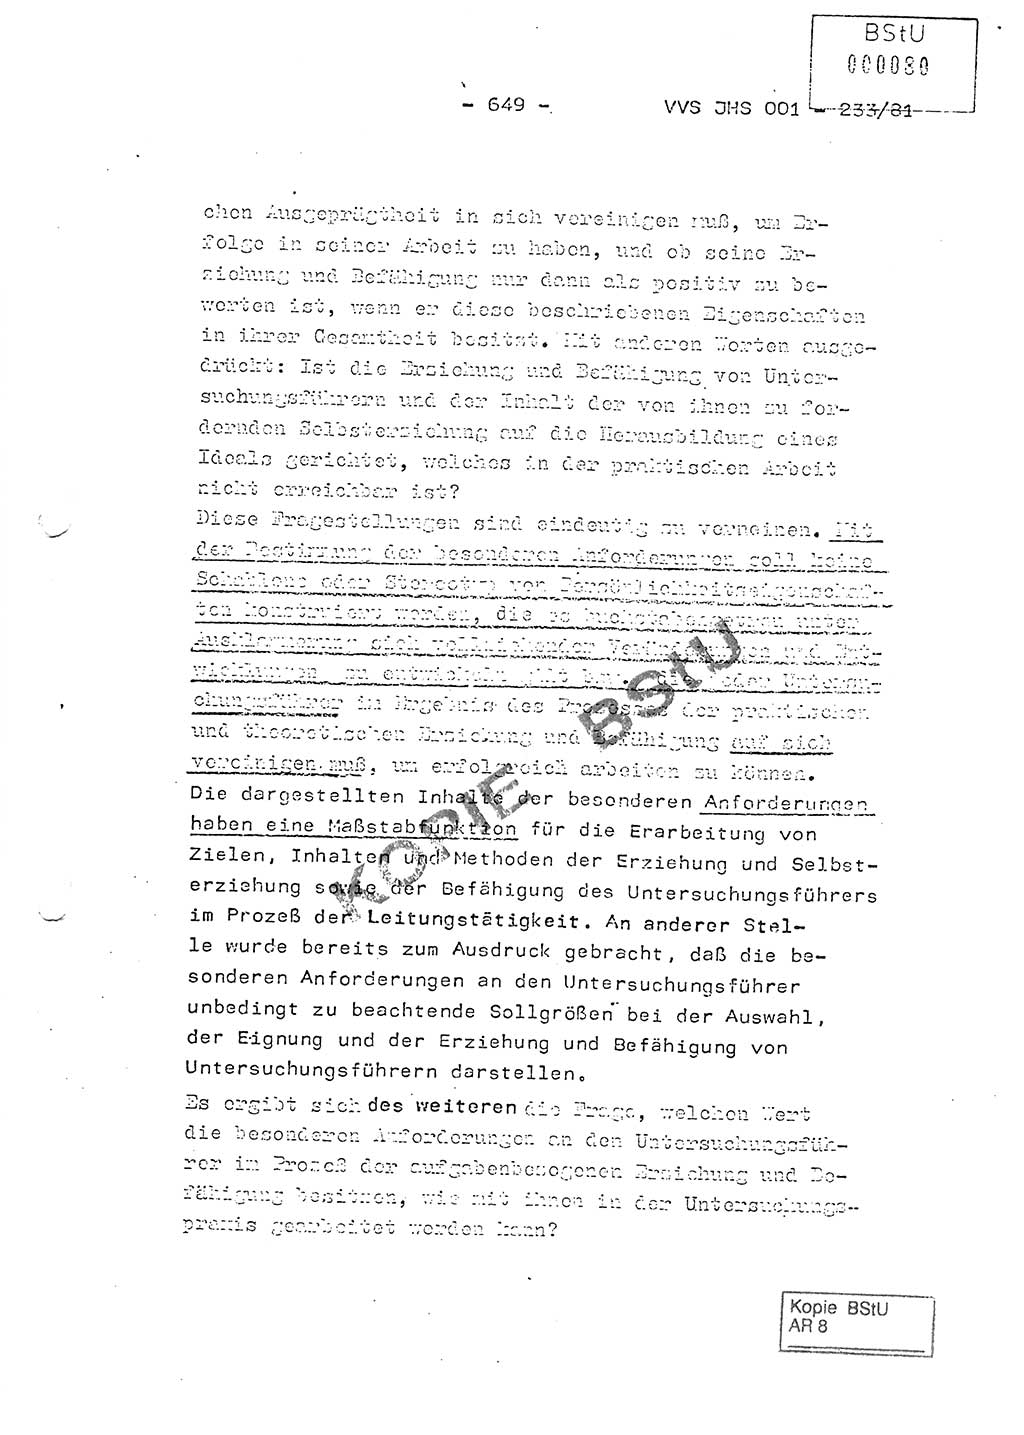 Dissertation Oberstleutnant Horst Zank (JHS), Oberstleutnant Dr. Karl-Heinz Knoblauch (JHS), Oberstleutnant Gustav-Adolf Kowalewski (HA Ⅸ), Oberstleutnant Wolfgang Plötner (HA Ⅸ), Ministerium für Staatssicherheit (MfS) [Deutsche Demokratische Republik (DDR)], Juristische Hochschule (JHS), Vertrauliche Verschlußsache (VVS) o001-233/81, Potsdam 1981, Blatt 649 (Diss. MfS DDR JHS VVS o001-233/81 1981, Bl. 649)